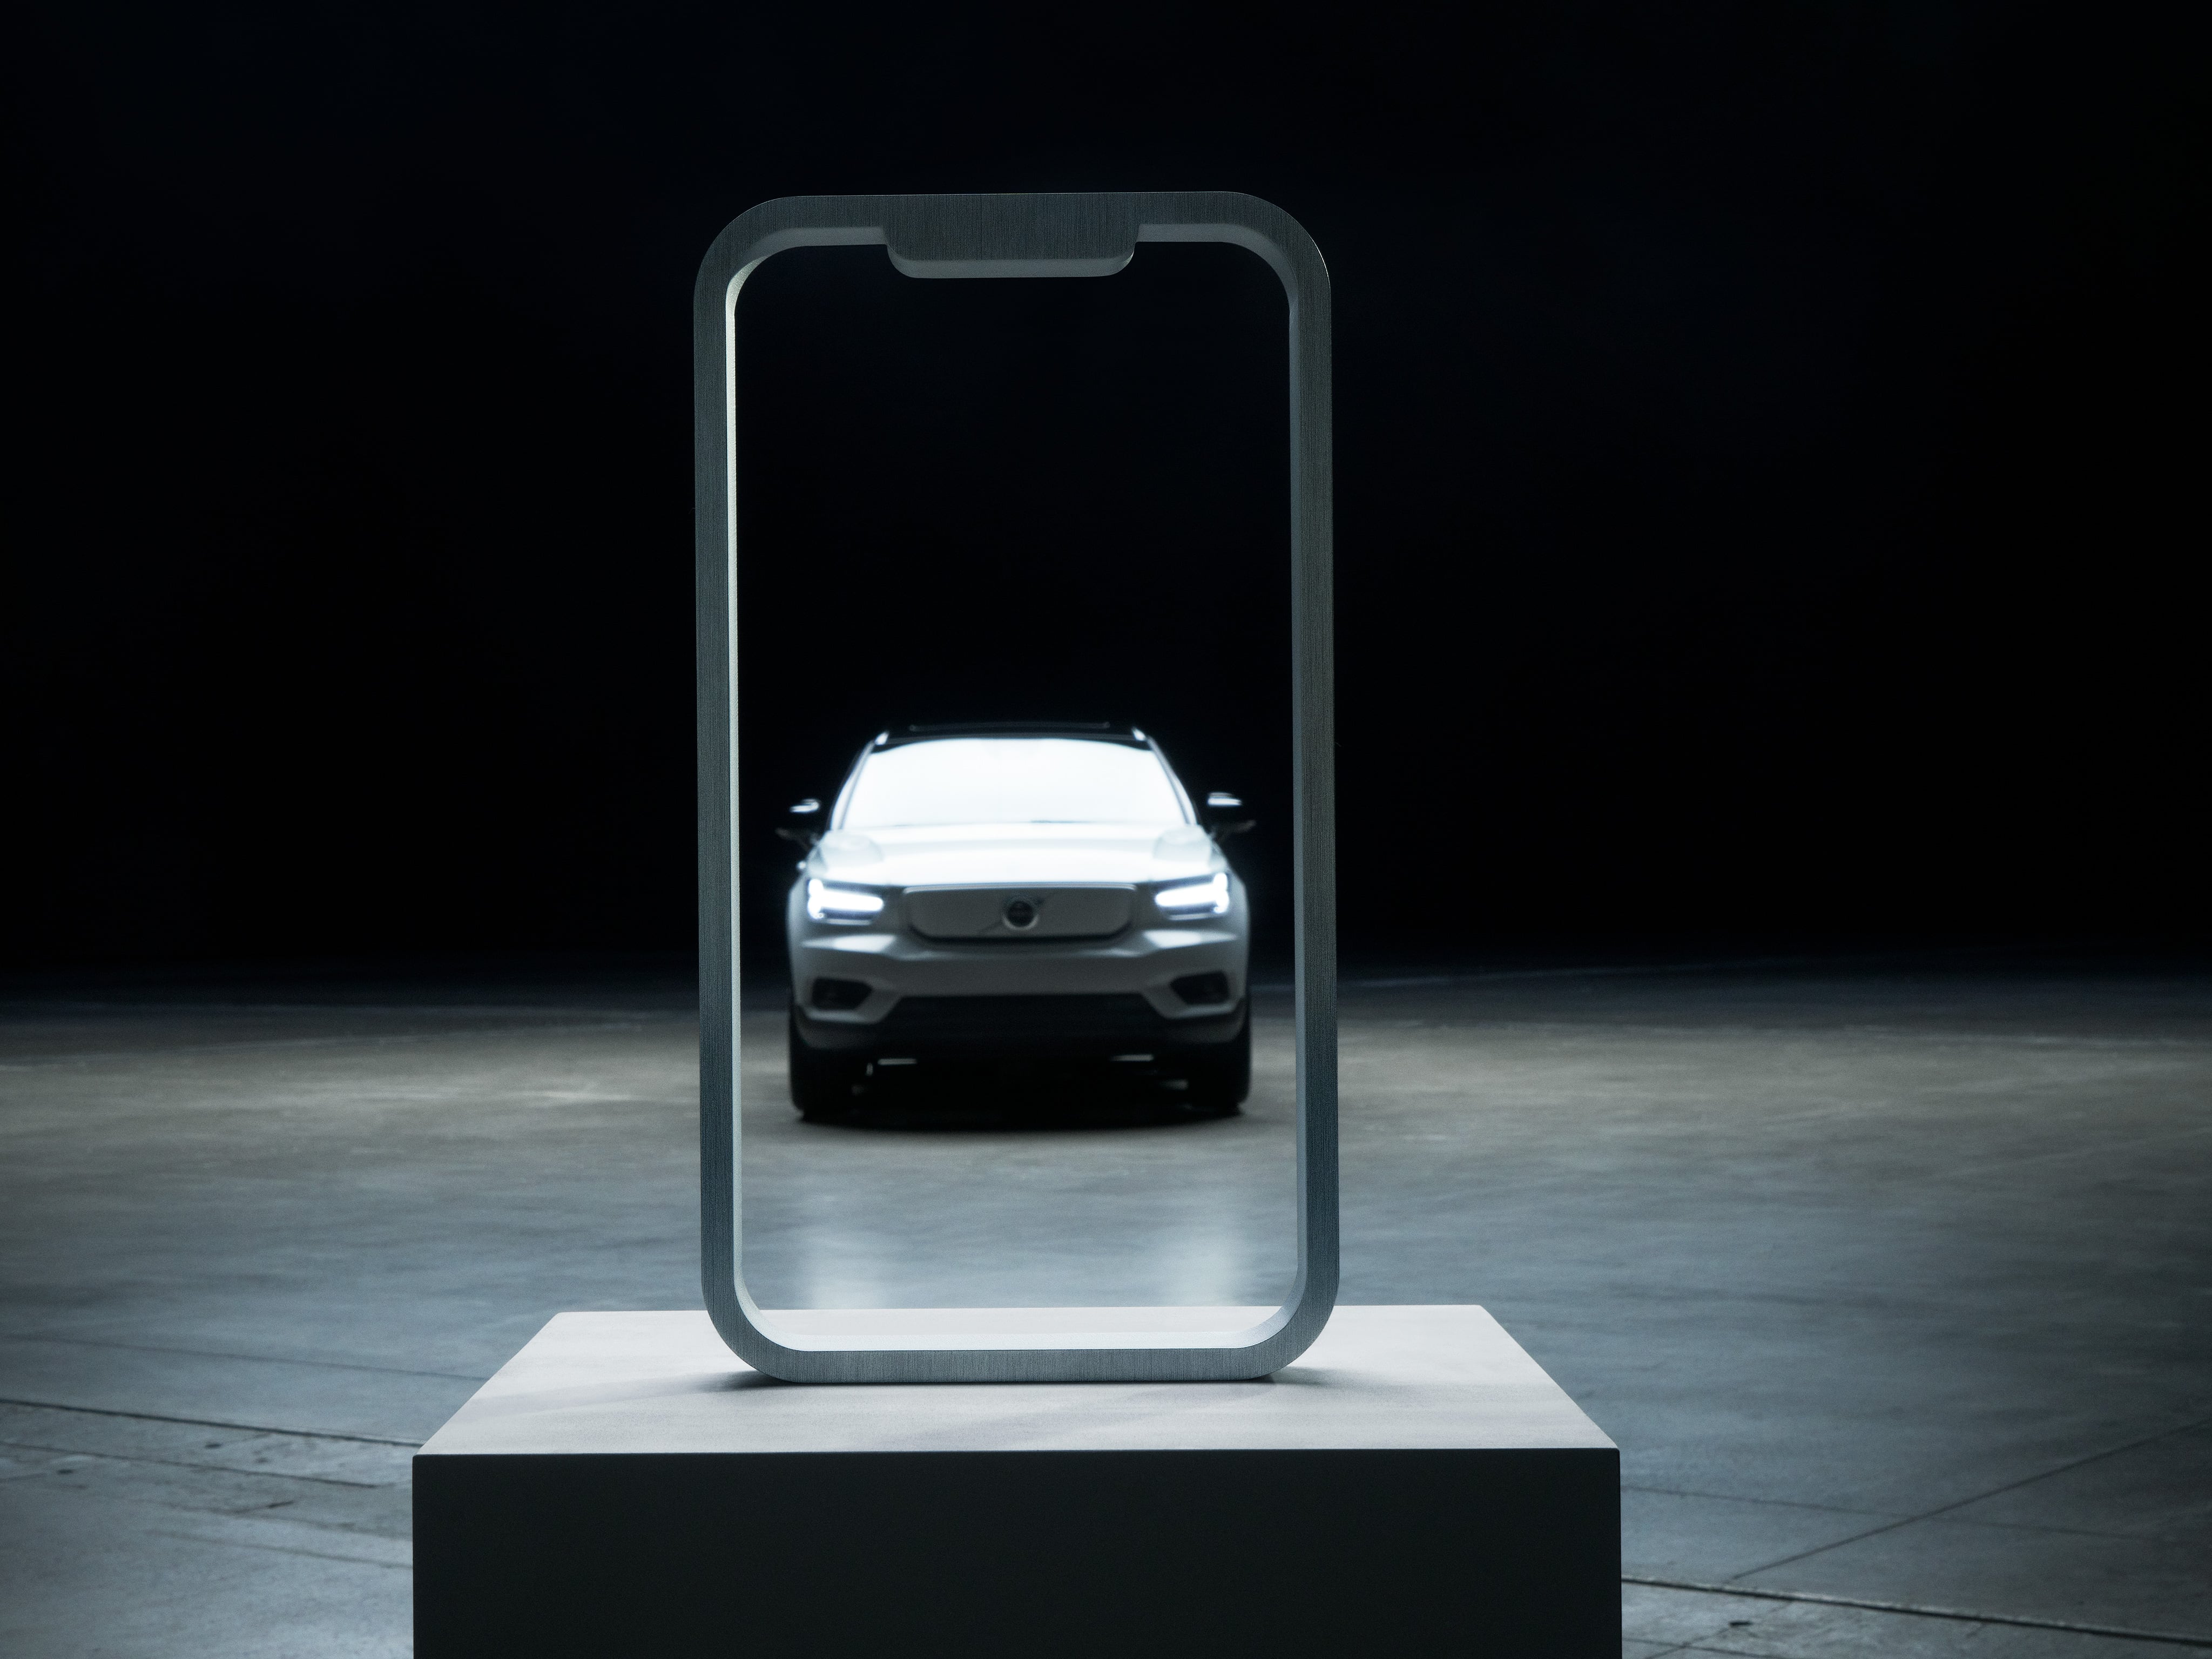 Un Volvo XC40 Recharge enmarcado por la silueta de la pantalla de un móvil colocado en un podio.